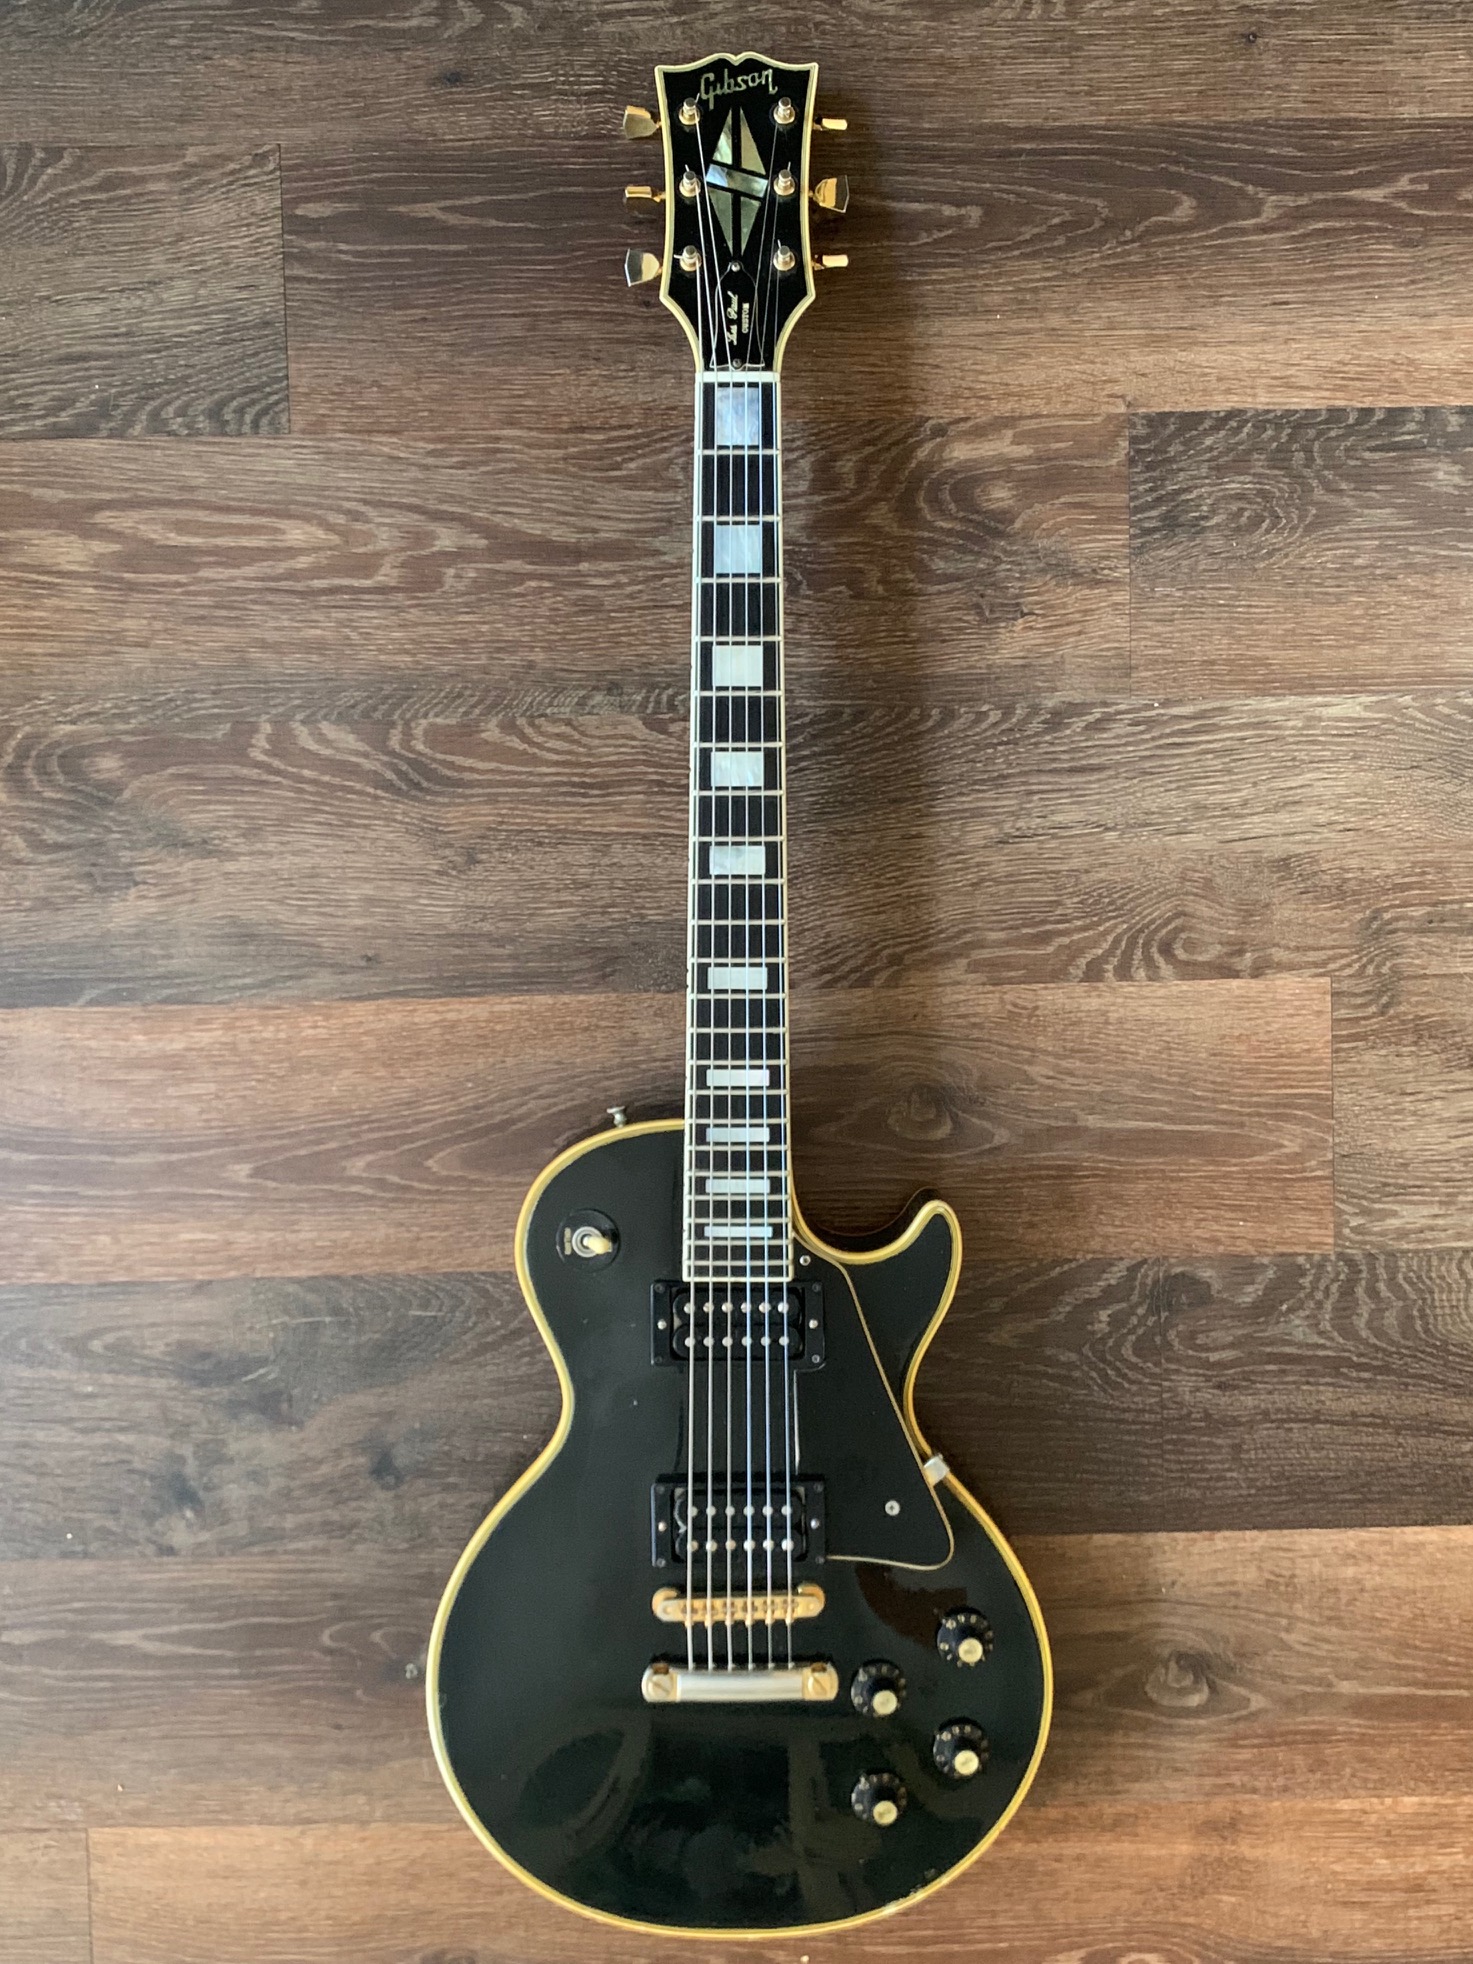 Gibson Les Paul Custom 1970 Black Guitar For Sale Richard Henry Guitars Ltd